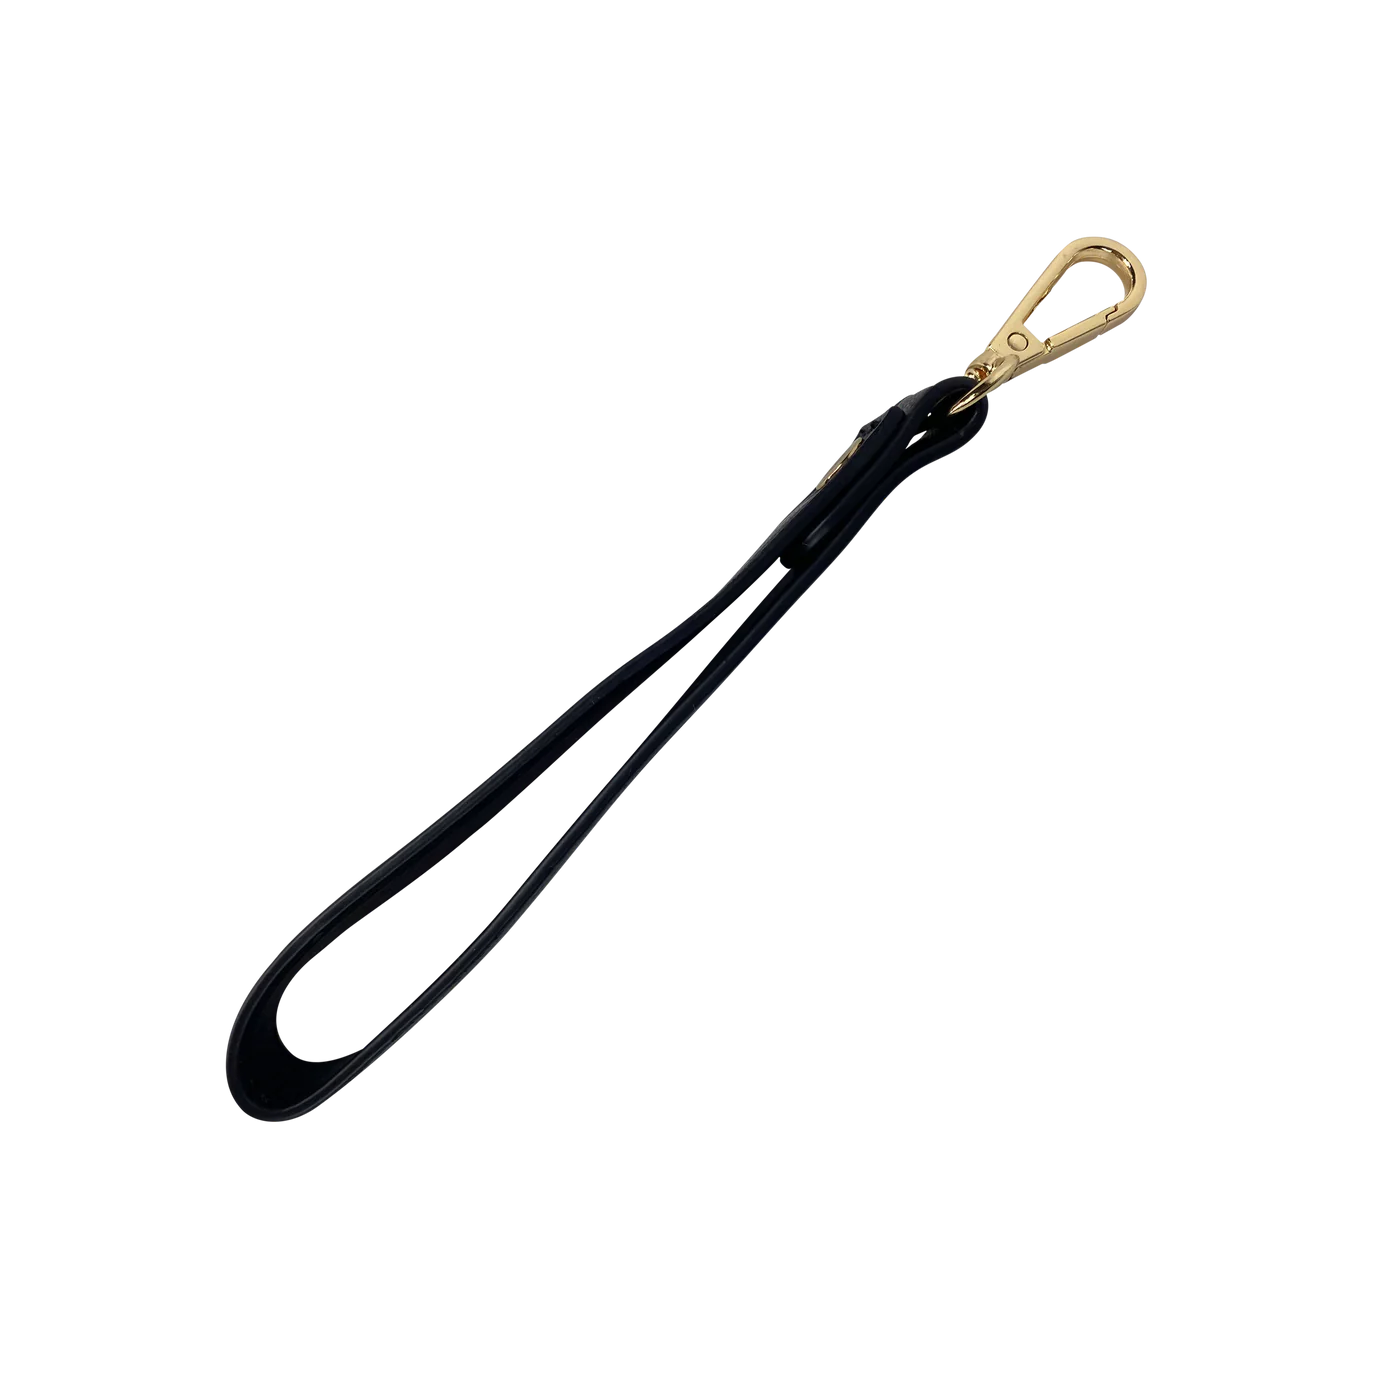 Pursen wristlet strap key chain black onyx 